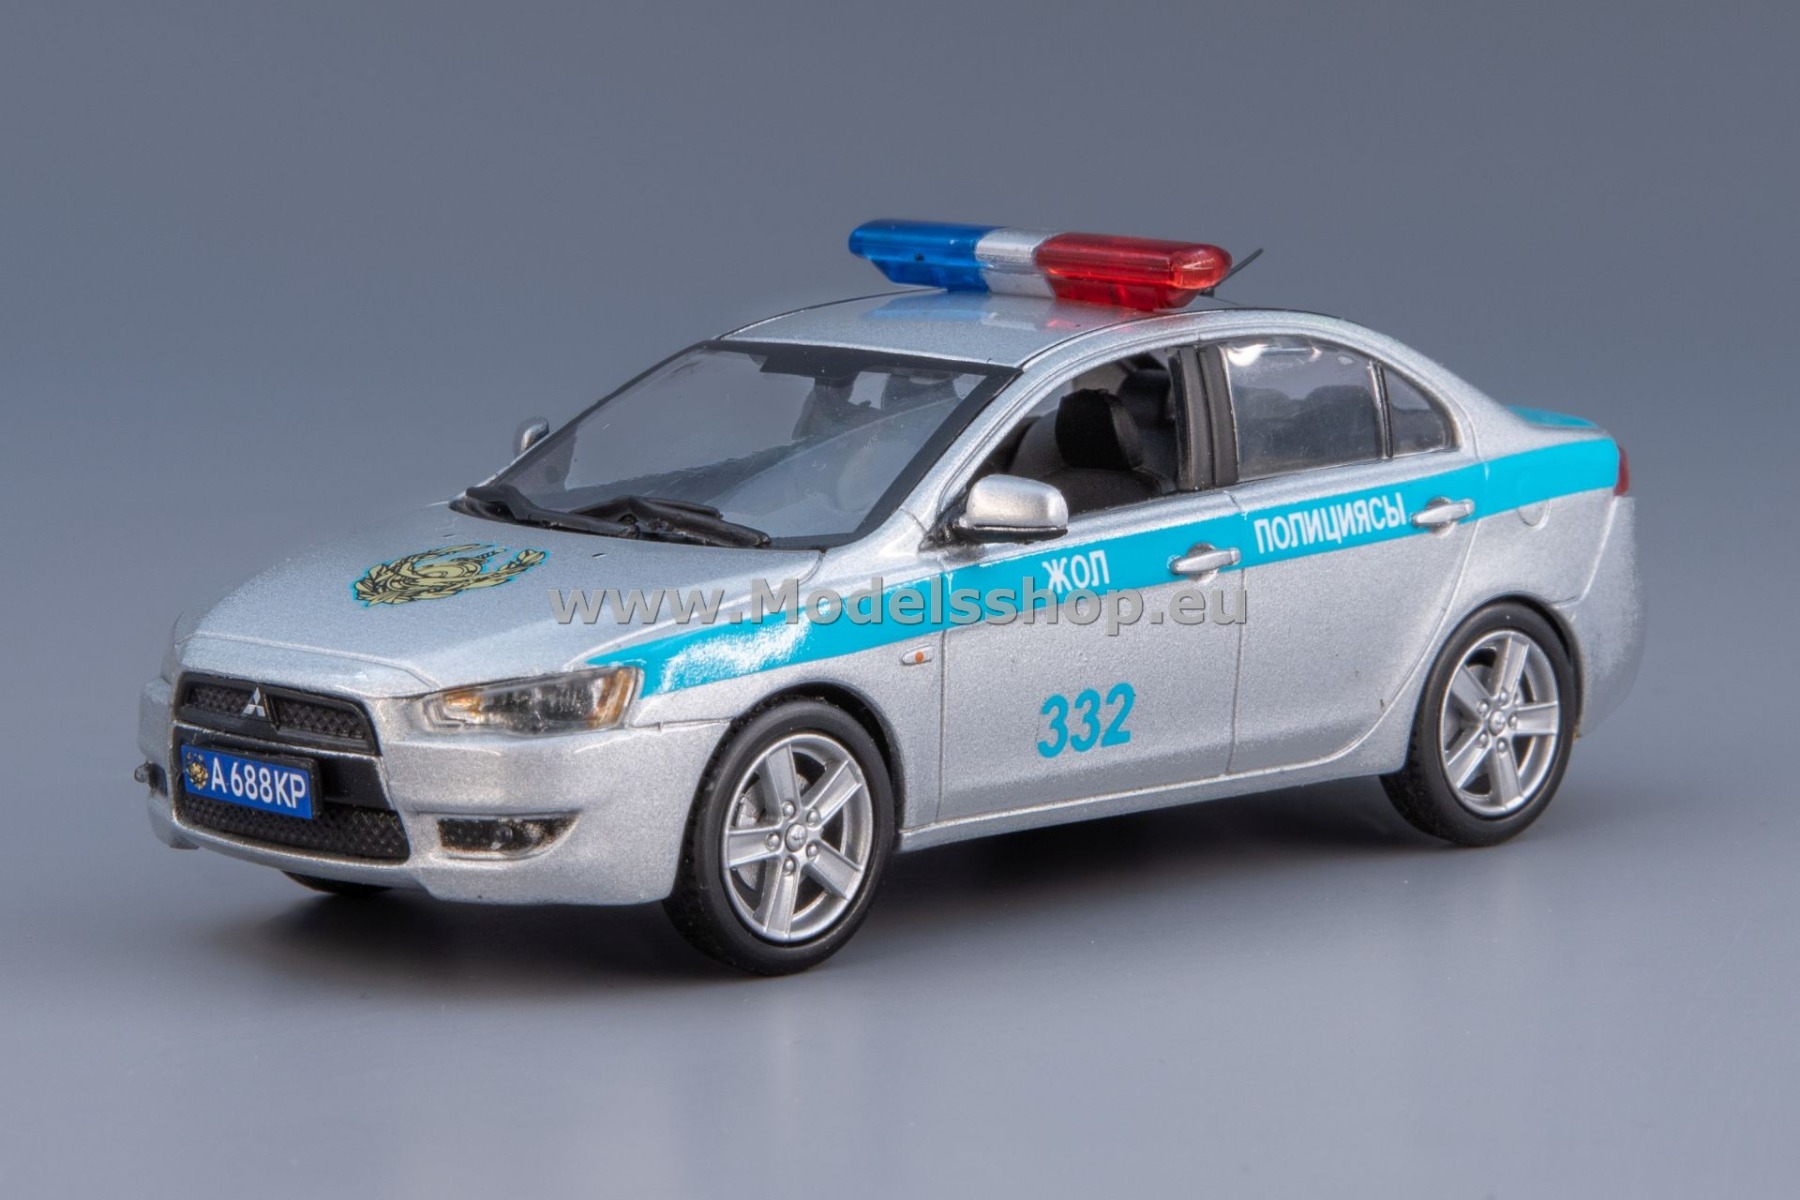 Mitsubishi Lancer 2010, Kazakhstan police 